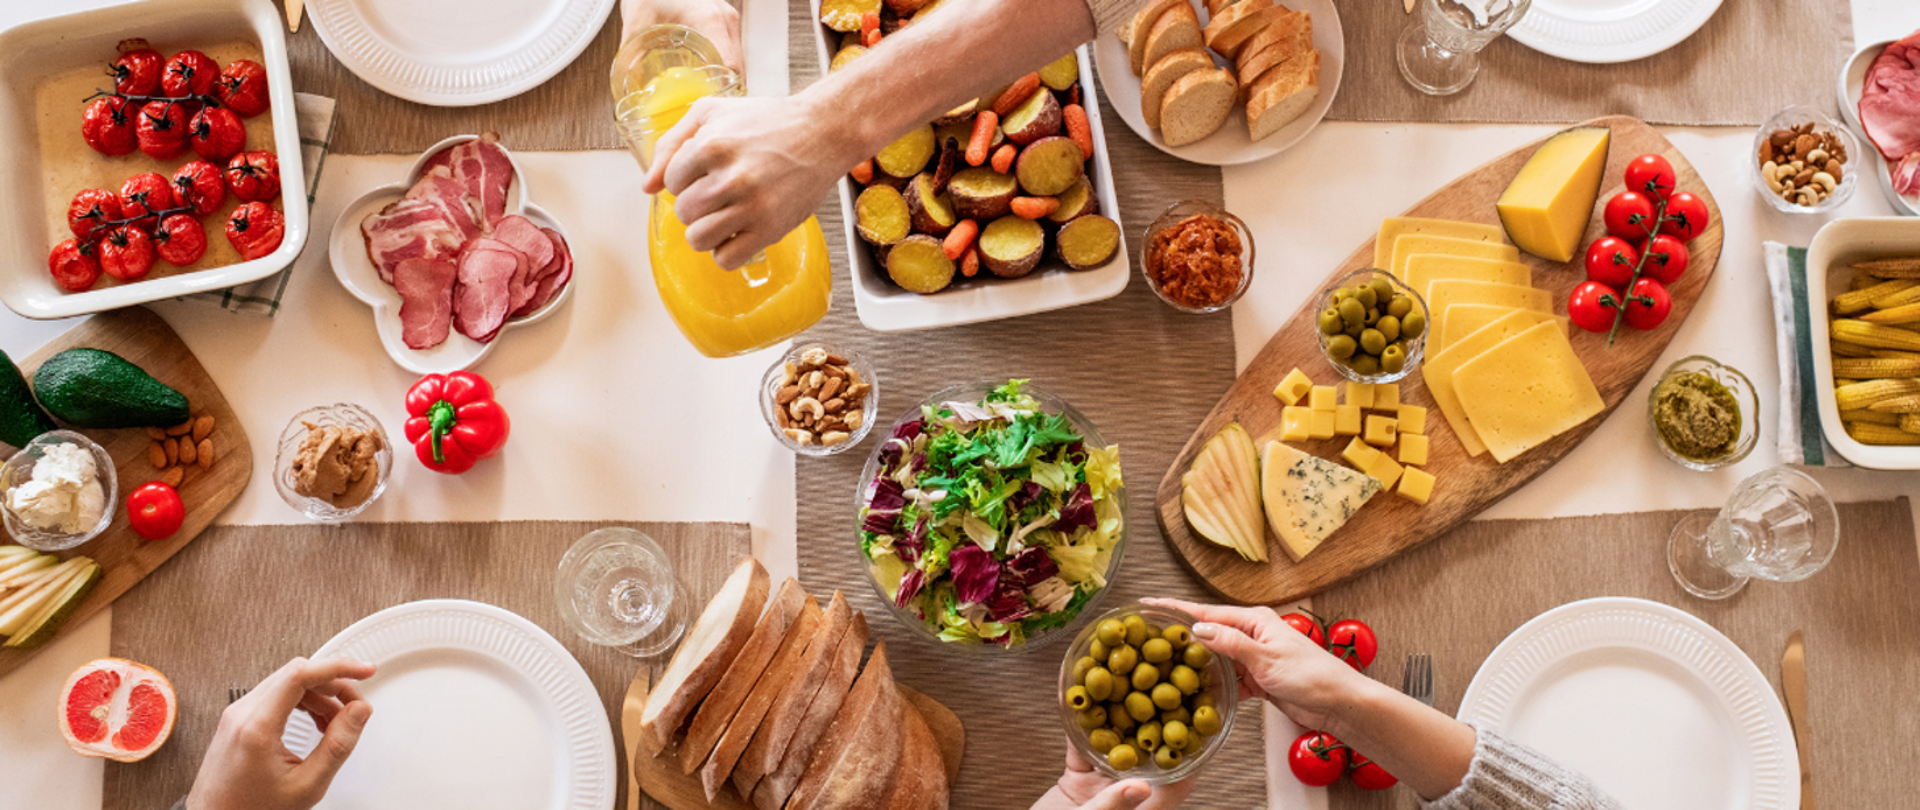 Zdjęcie przedstawiające stół zastawiony żywnością i talerzami. Na półmiskach i deskach do krojenia znajdują się warzywa, sery, wędliny, owoce i orzechy. Na zdjęciu widać dłonie sięgające po jedzenie.